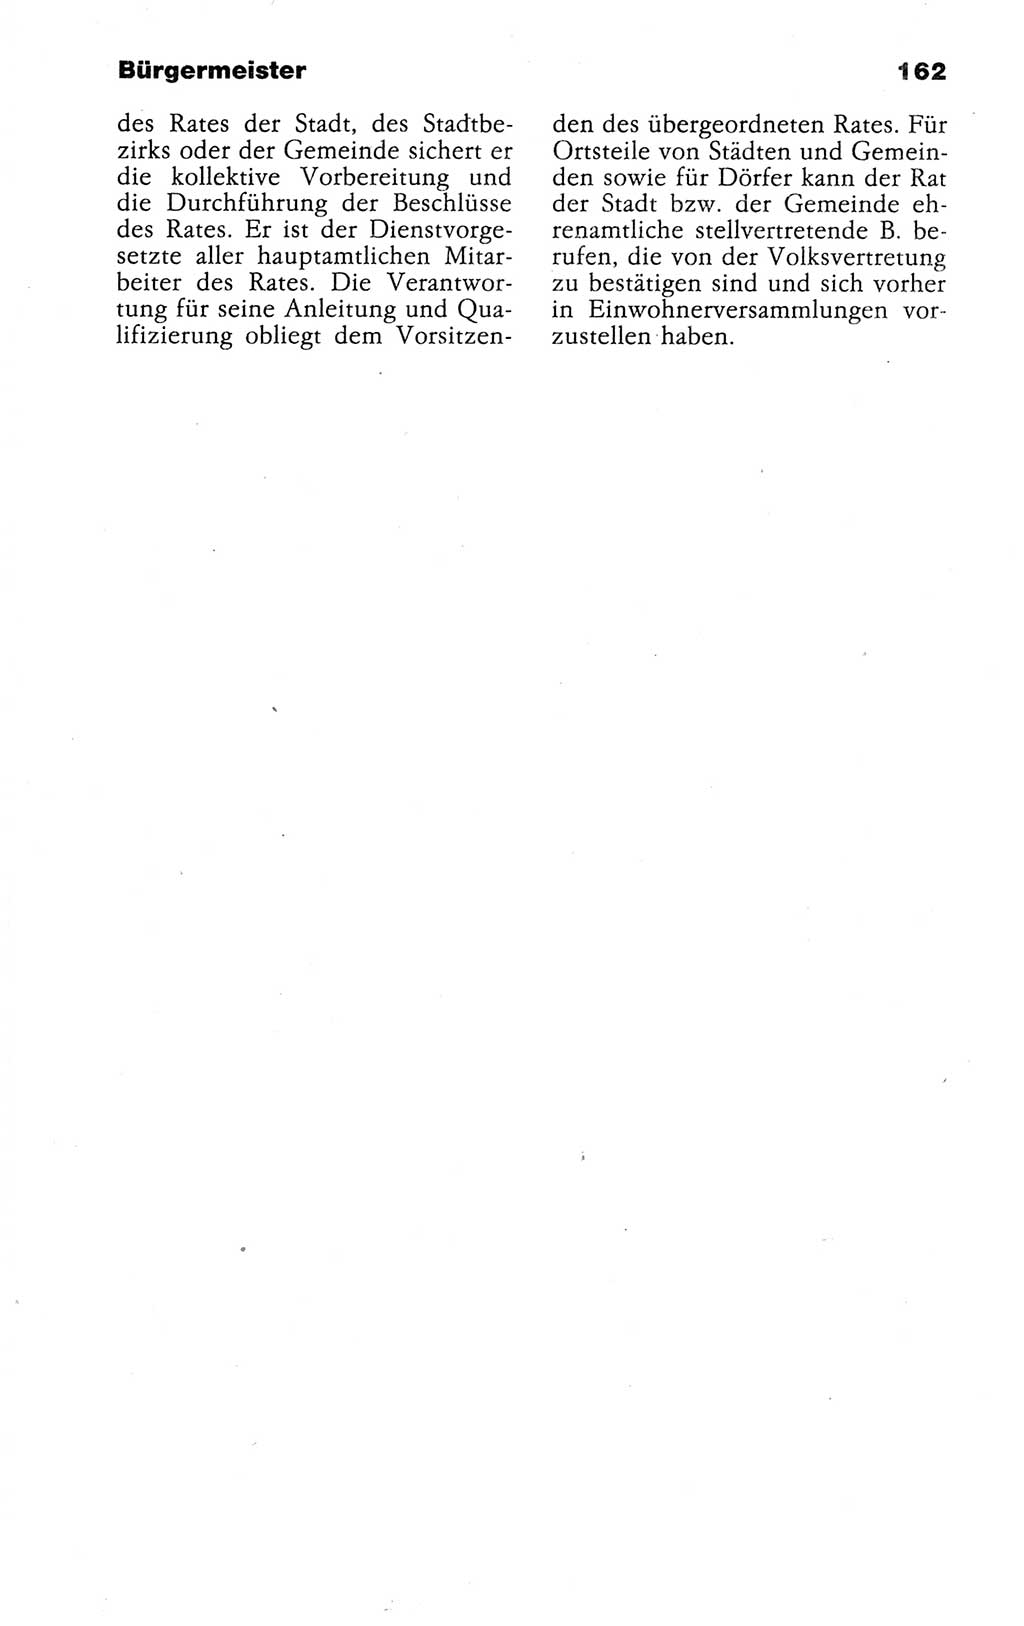 Kleines politisches Wörterbuch [Deutsche Demokratische Republik (DDR)] 1988, Seite 162 (Kl. pol. Wb. DDR 1988, S. 162)